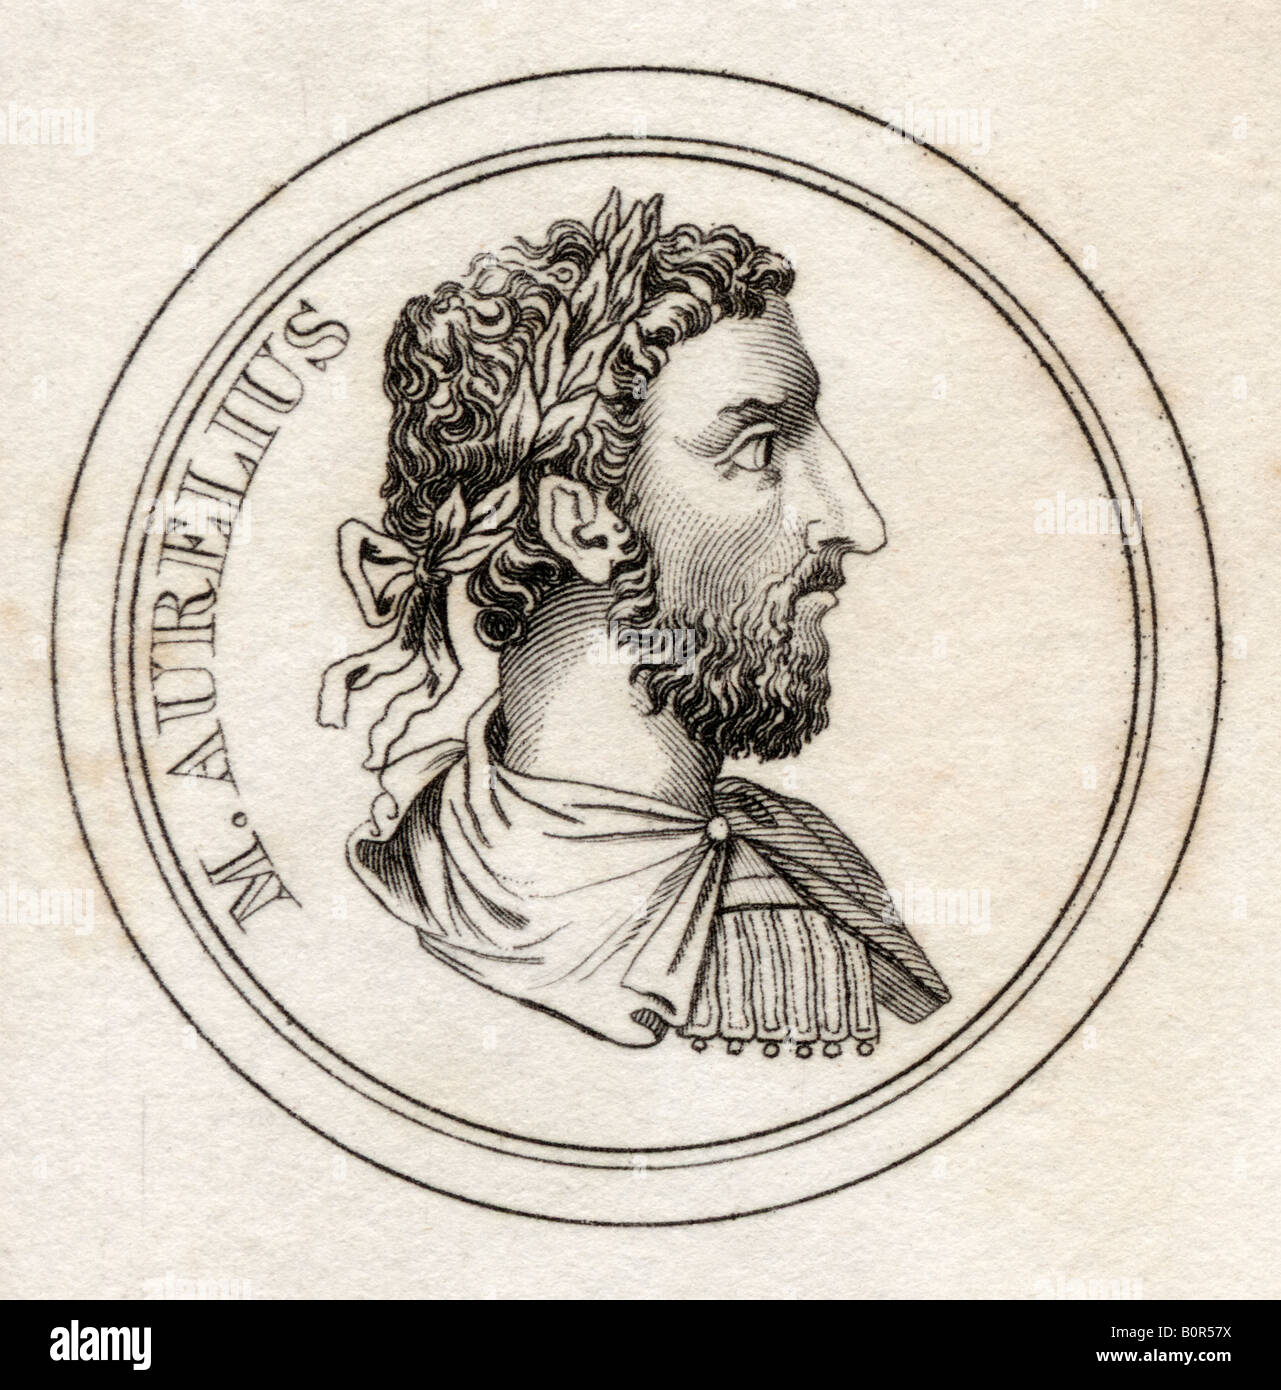 Marco Aurelio, 121 - 180 d.C. imperatore romano. Dal libro Crabbs Historical Dictionary, pubblicato nel 1825. Foto Stock